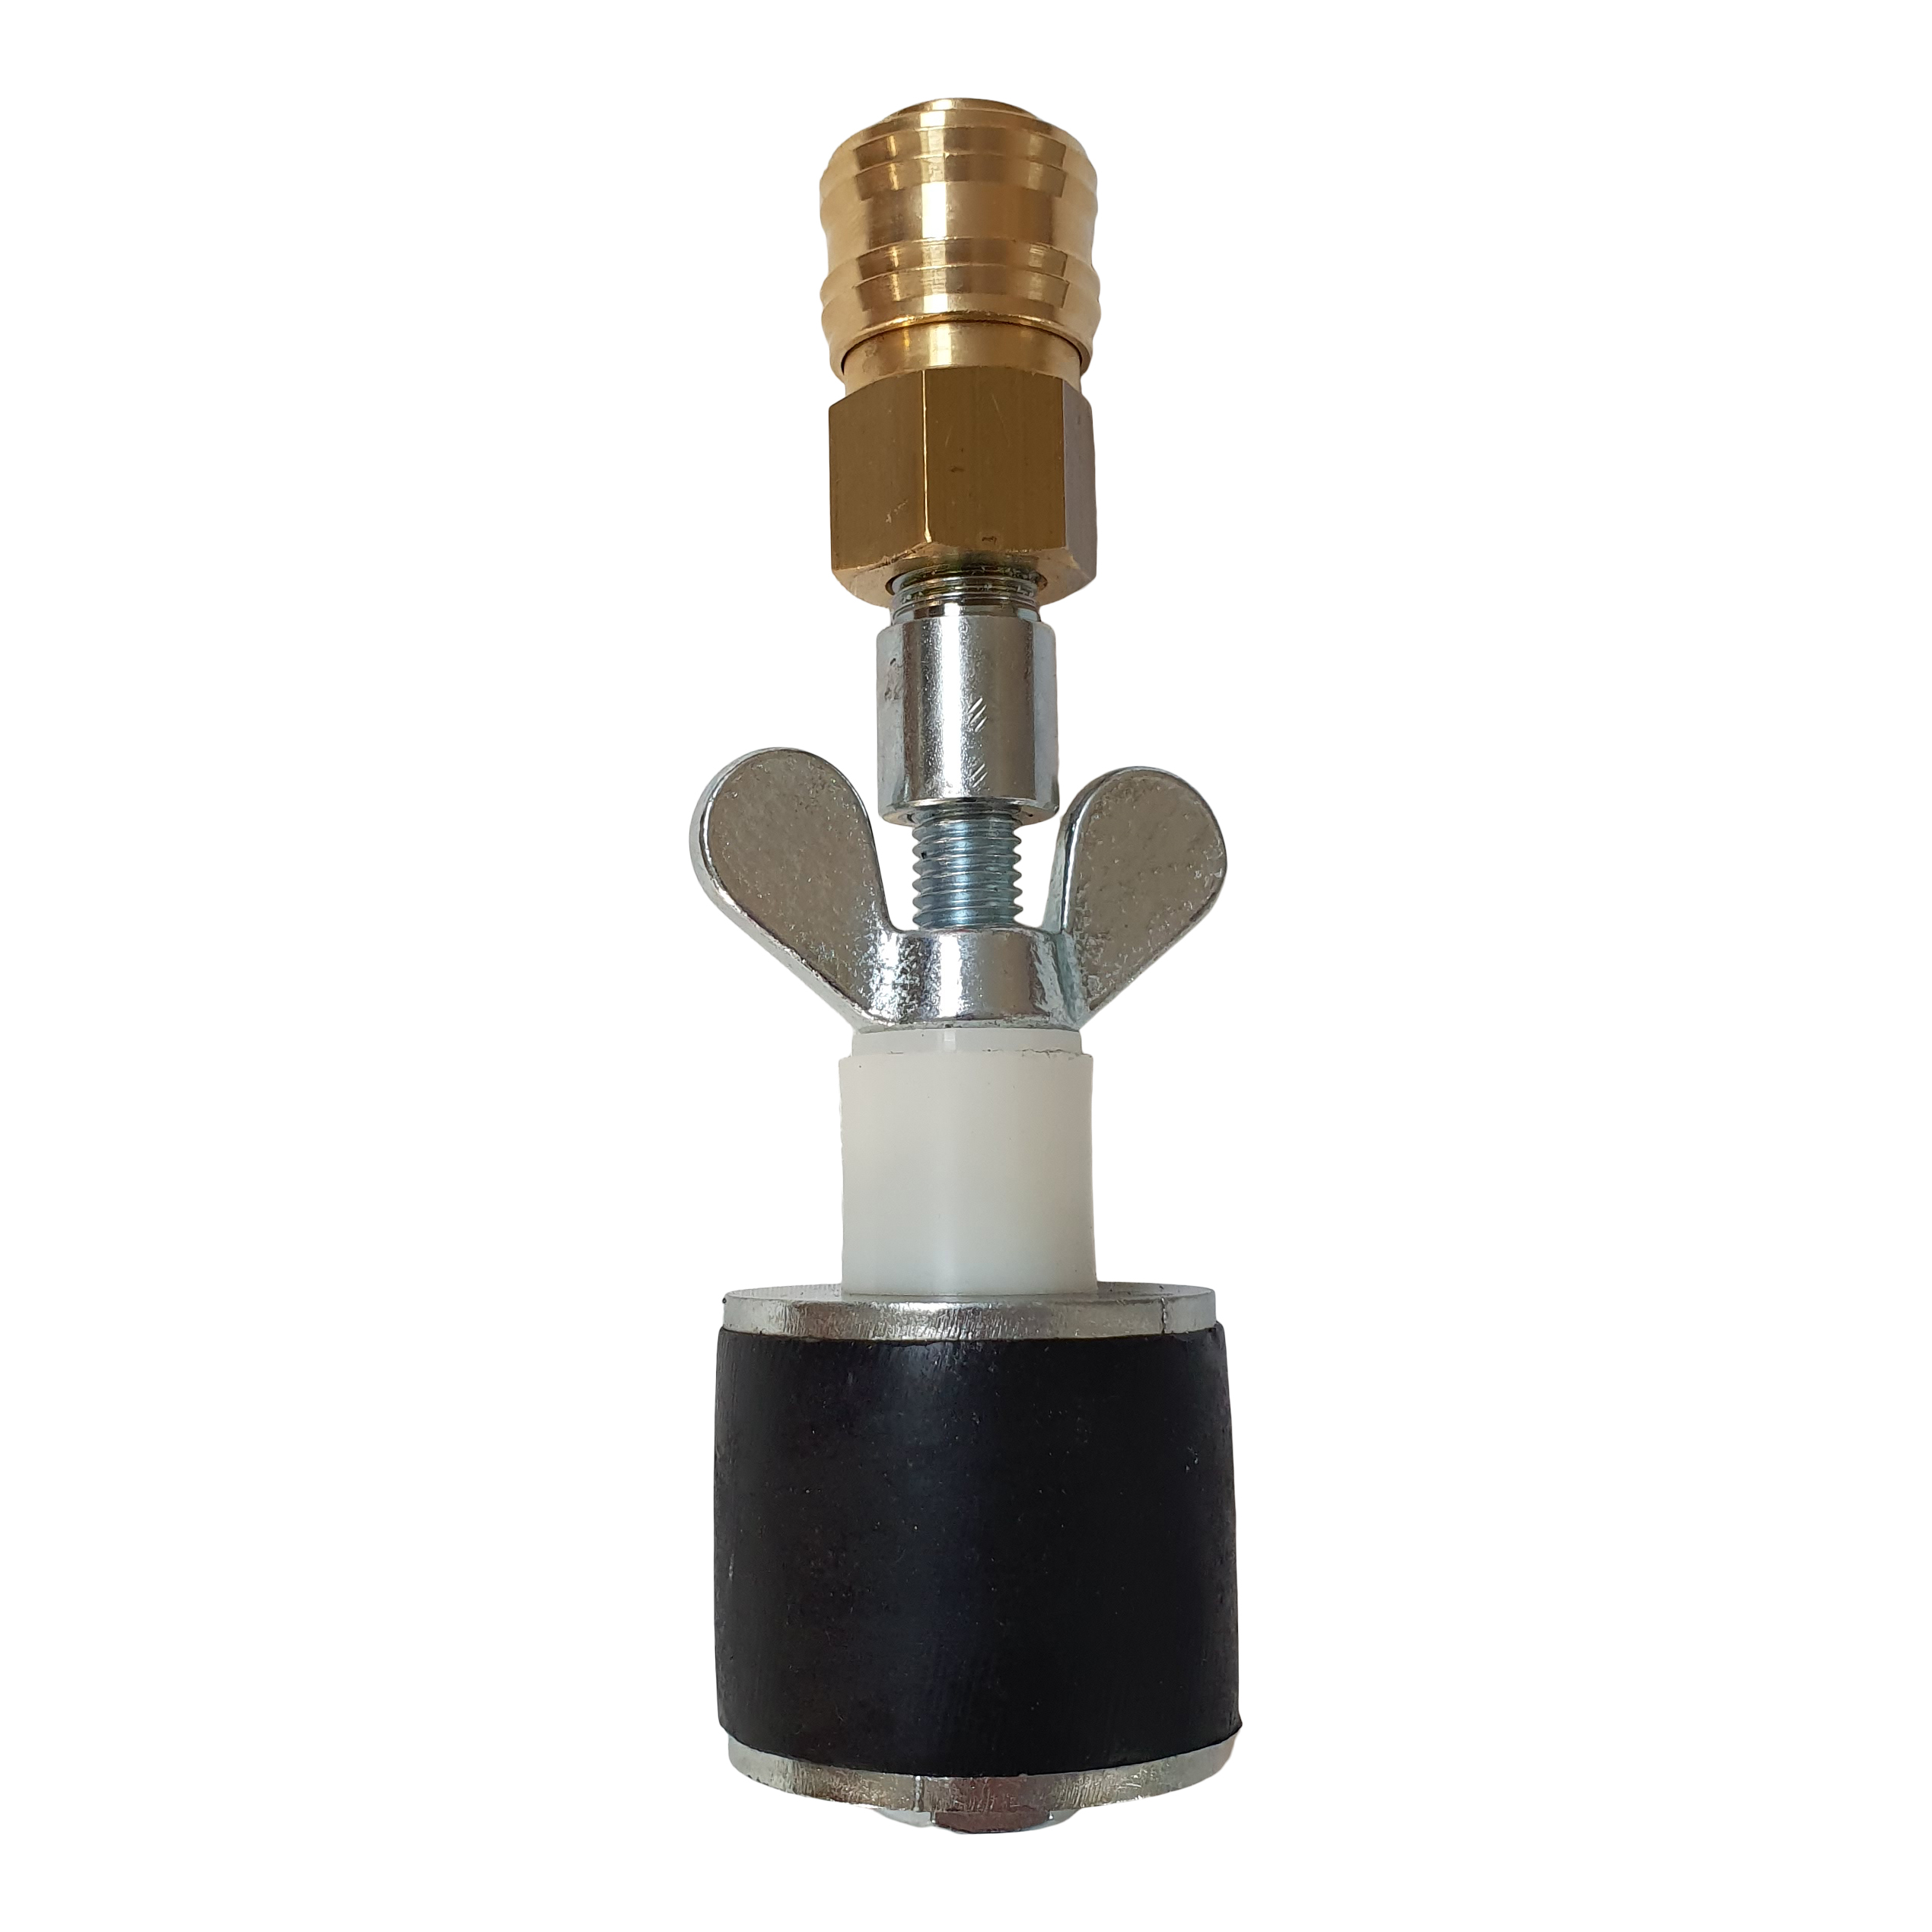 Rohrverschlussstopfen bis 8 bar mit Durchgang und Schnellverschlusskupplung Einsatzbereiche 15,6 - 99 mm